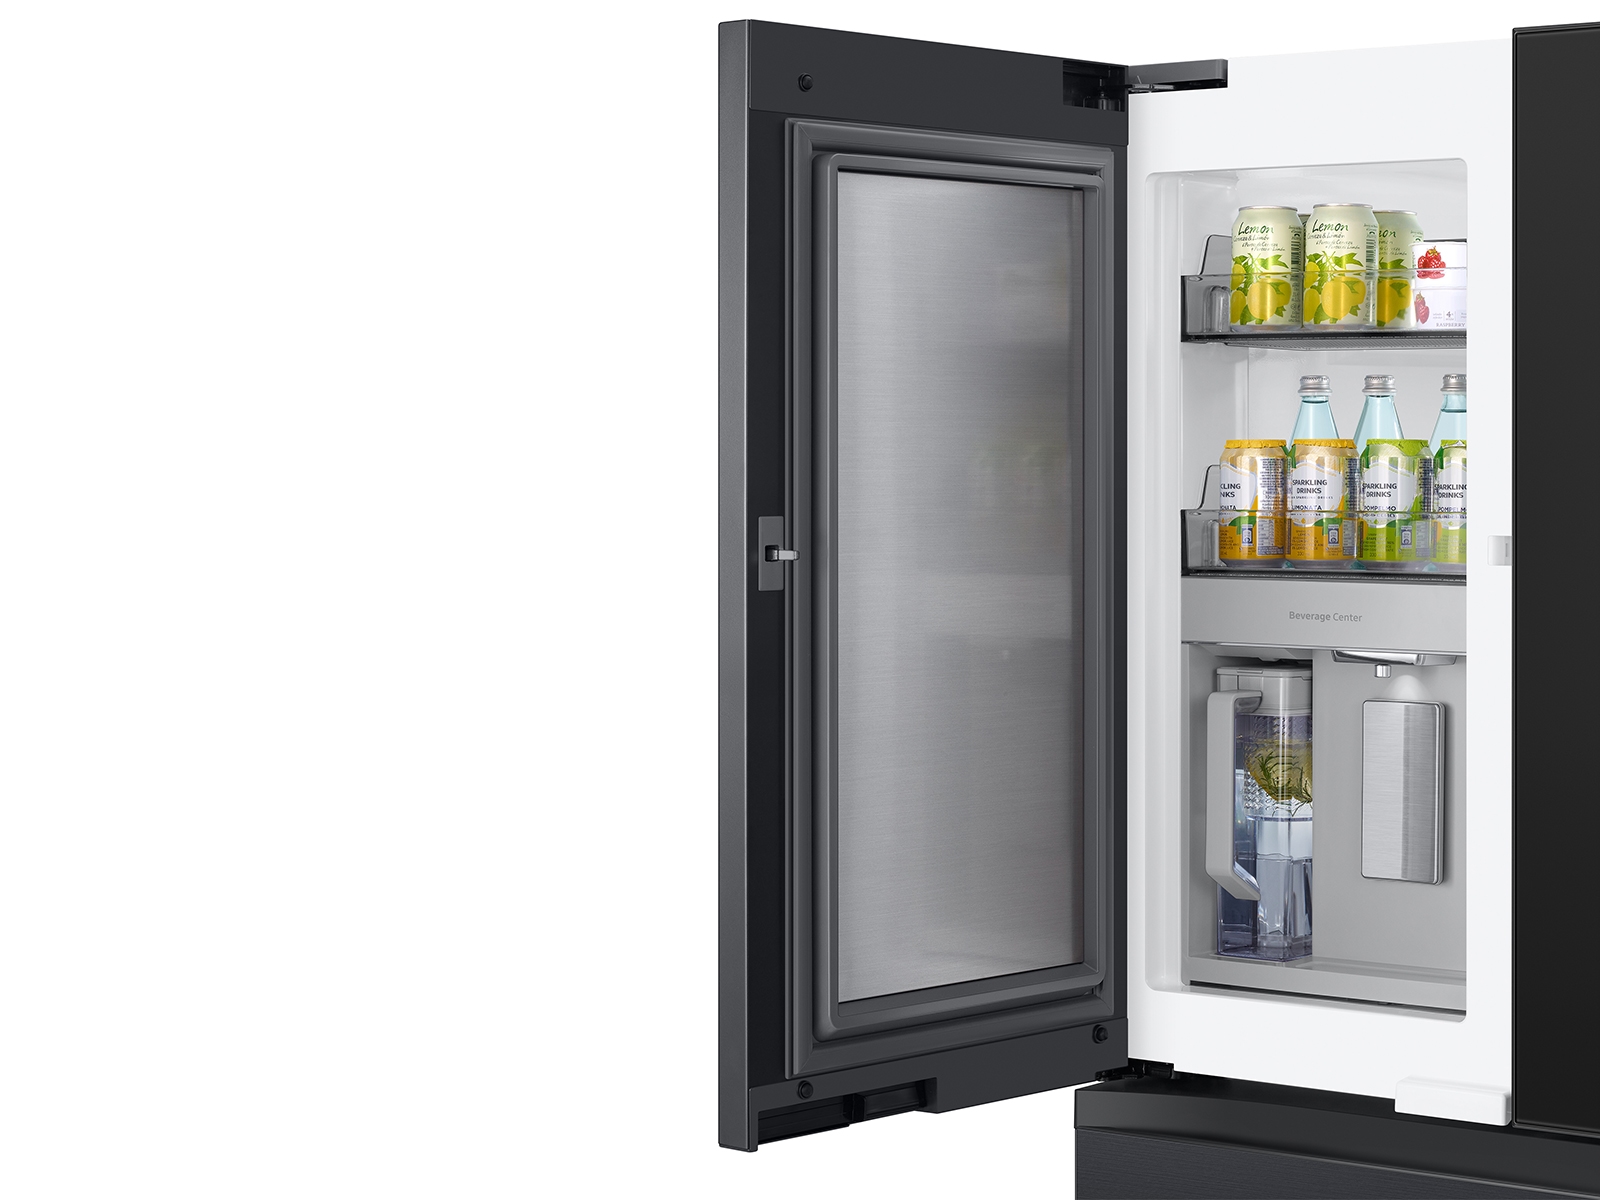 Skindy Mini Refrigerator - Double Door Design DIY Accessories, 1